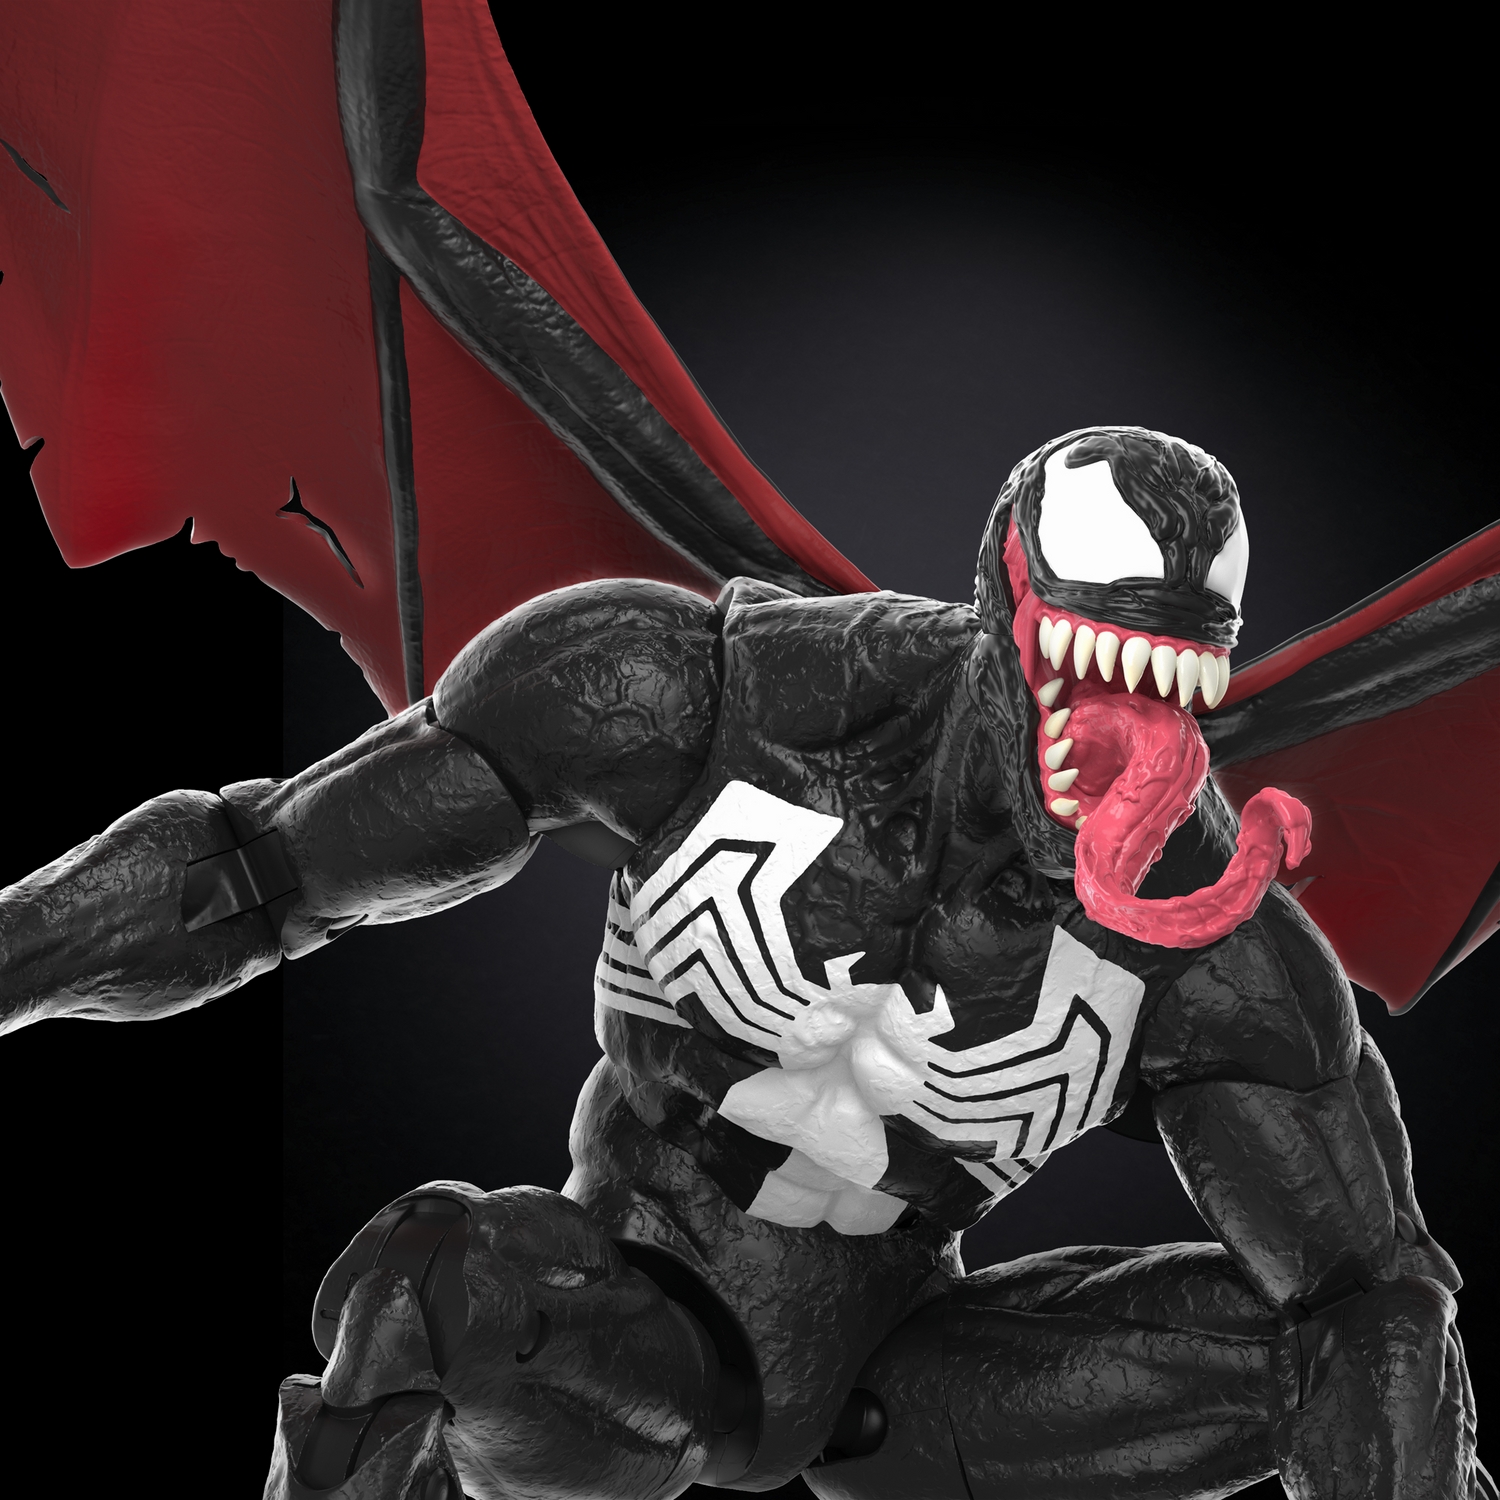 Marvel Legends Series 60th Anniv Marvel’s Knull and Venom 2-Pack - Image 20.jpg